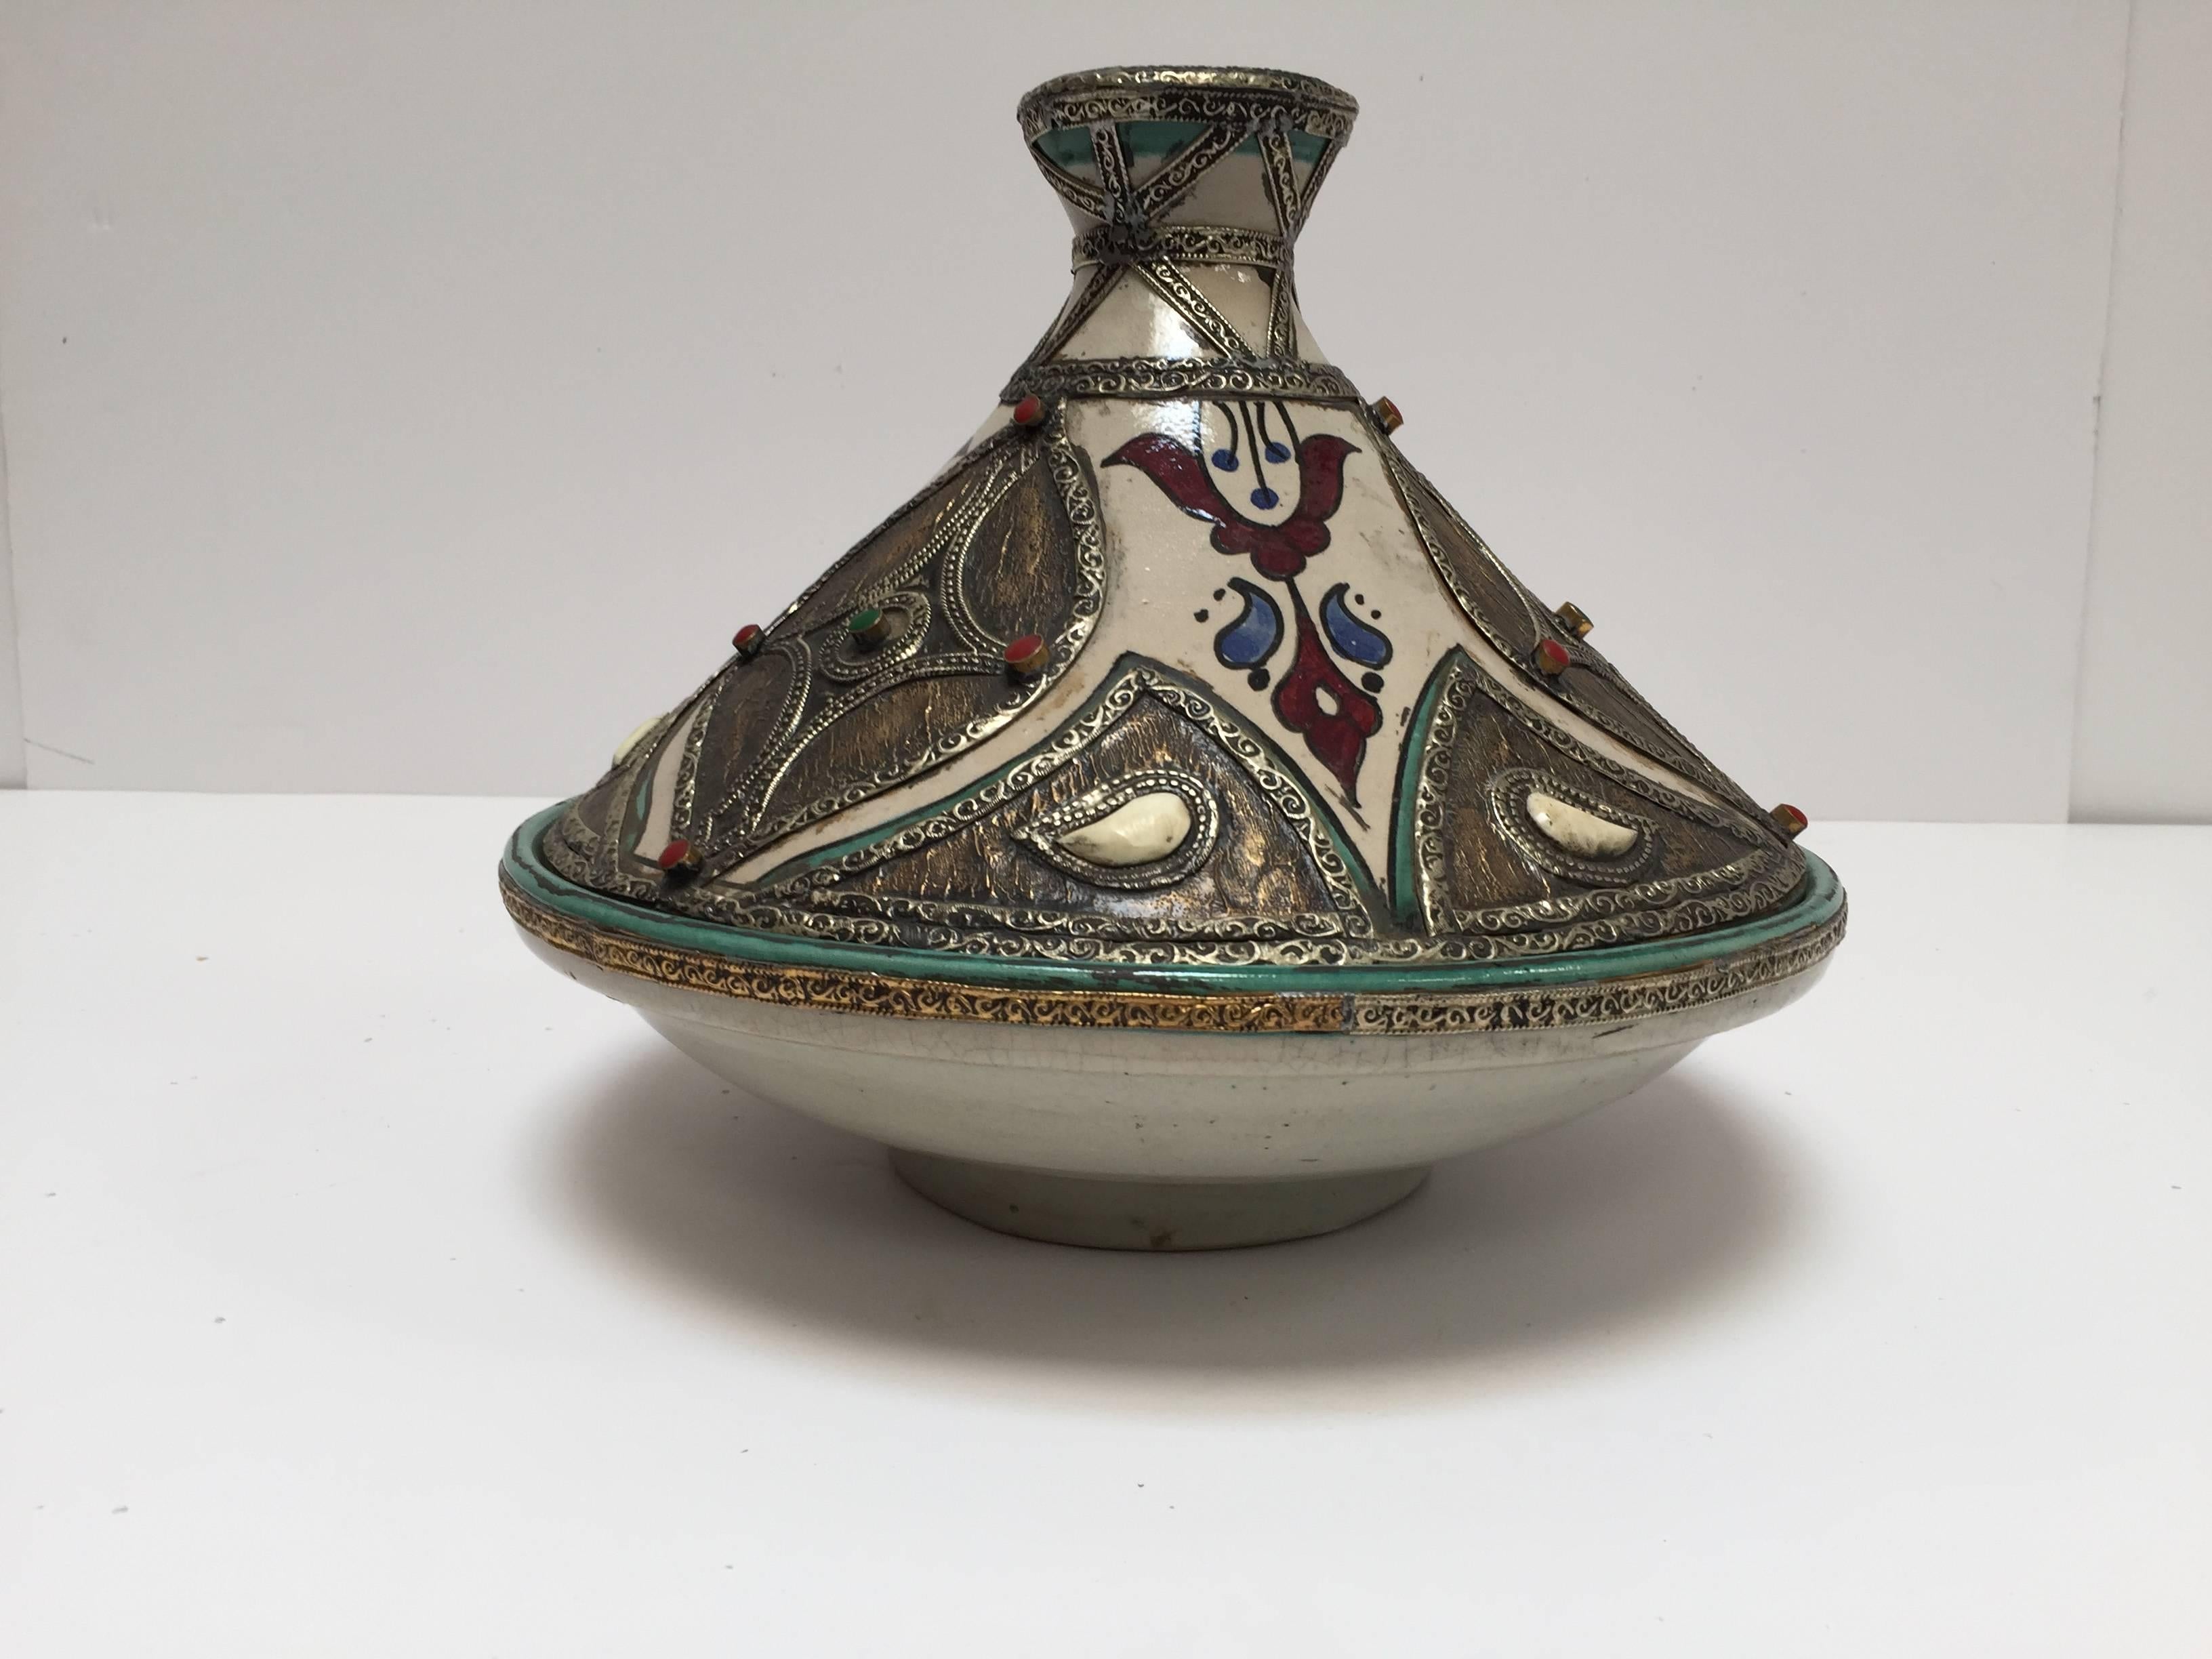 Dekorative Tajine aus marokkanischer Keramik, mehrfarbig mit Leder, Steinen und Metallüberzug, mit konischem Überzugdeckel.
Der Boden ist eine kreisförmige Schale und der obere Teil der Tajine hat die charakteristische Form eines